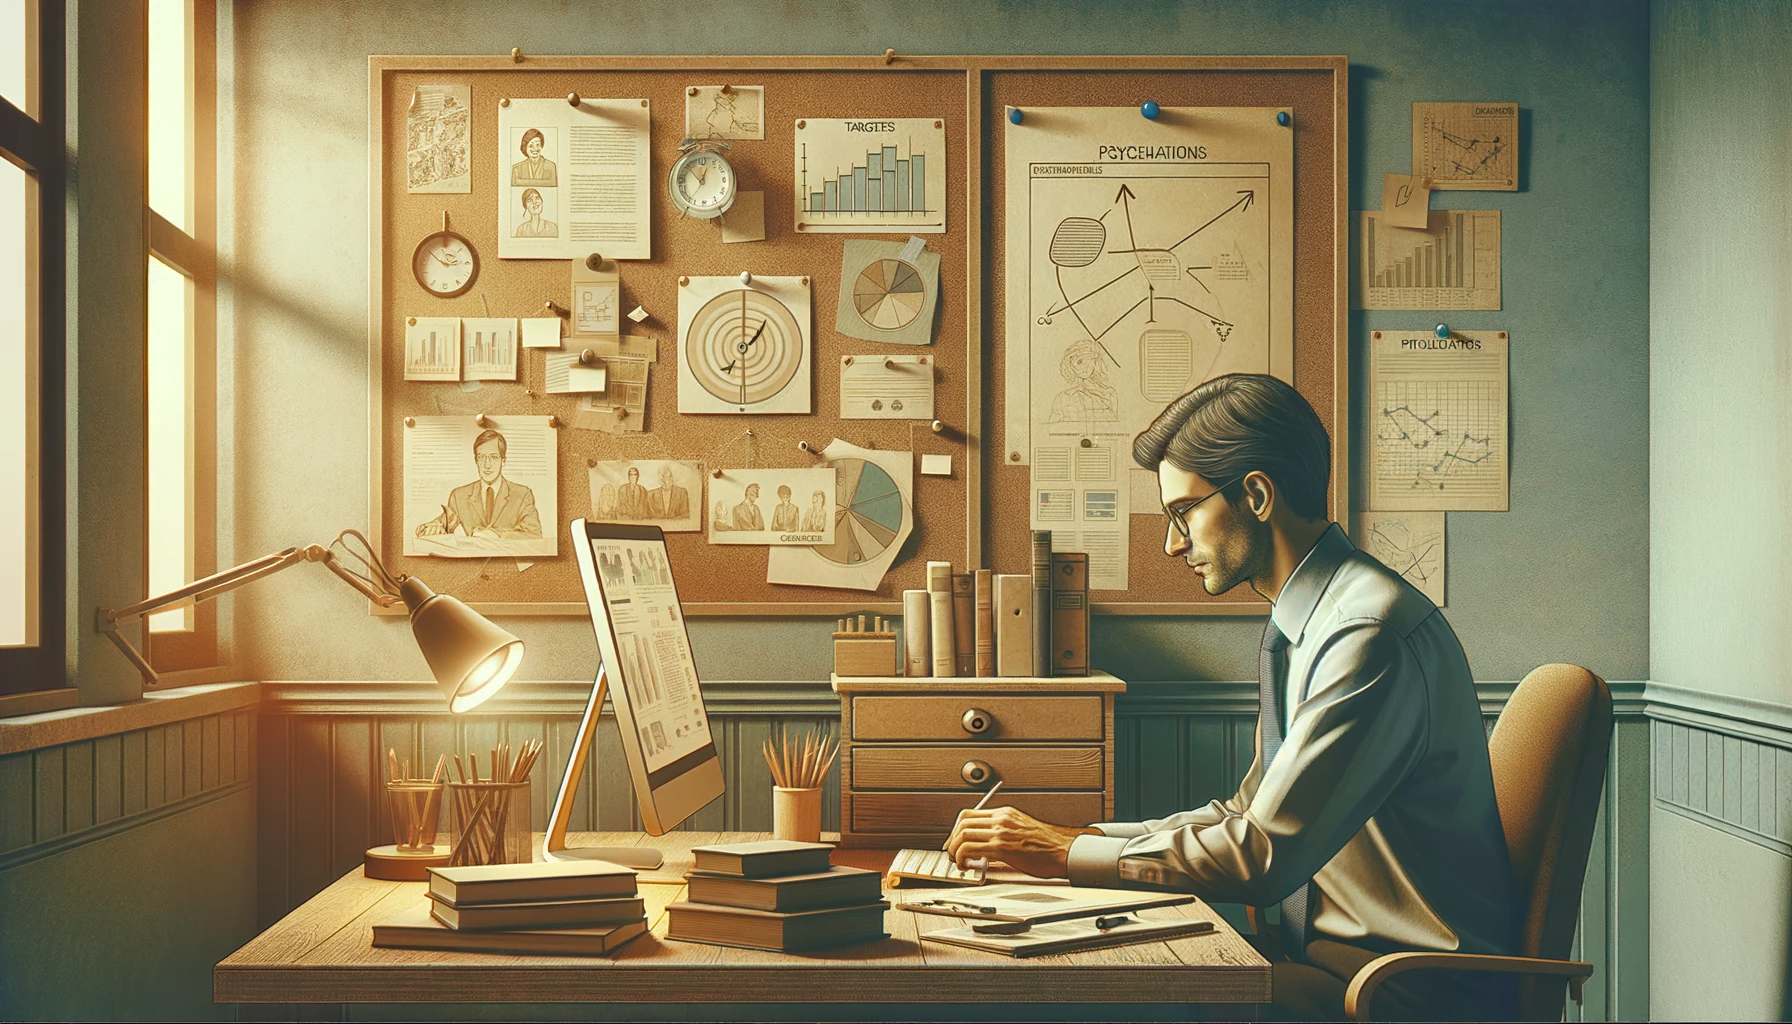 Illustrazione delle fasi di un progetto di psicologia, con una persona al lavoro su un computer in un ambiente classico